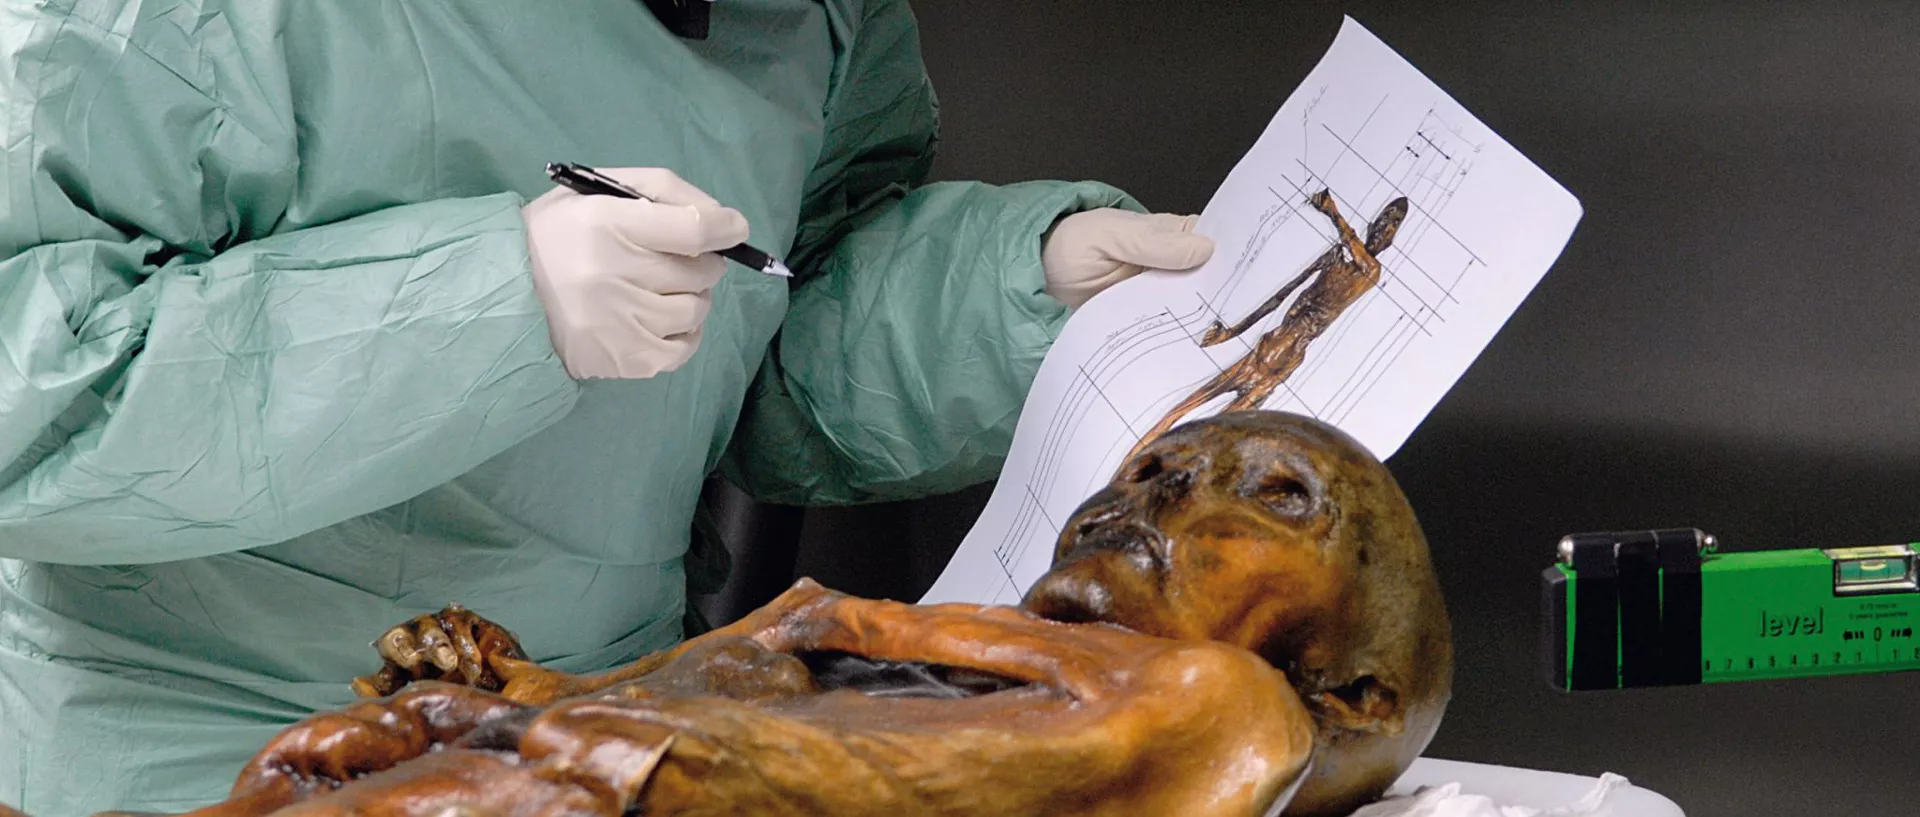 Die Mumie Ötzi auf einem Untersuchungstisch